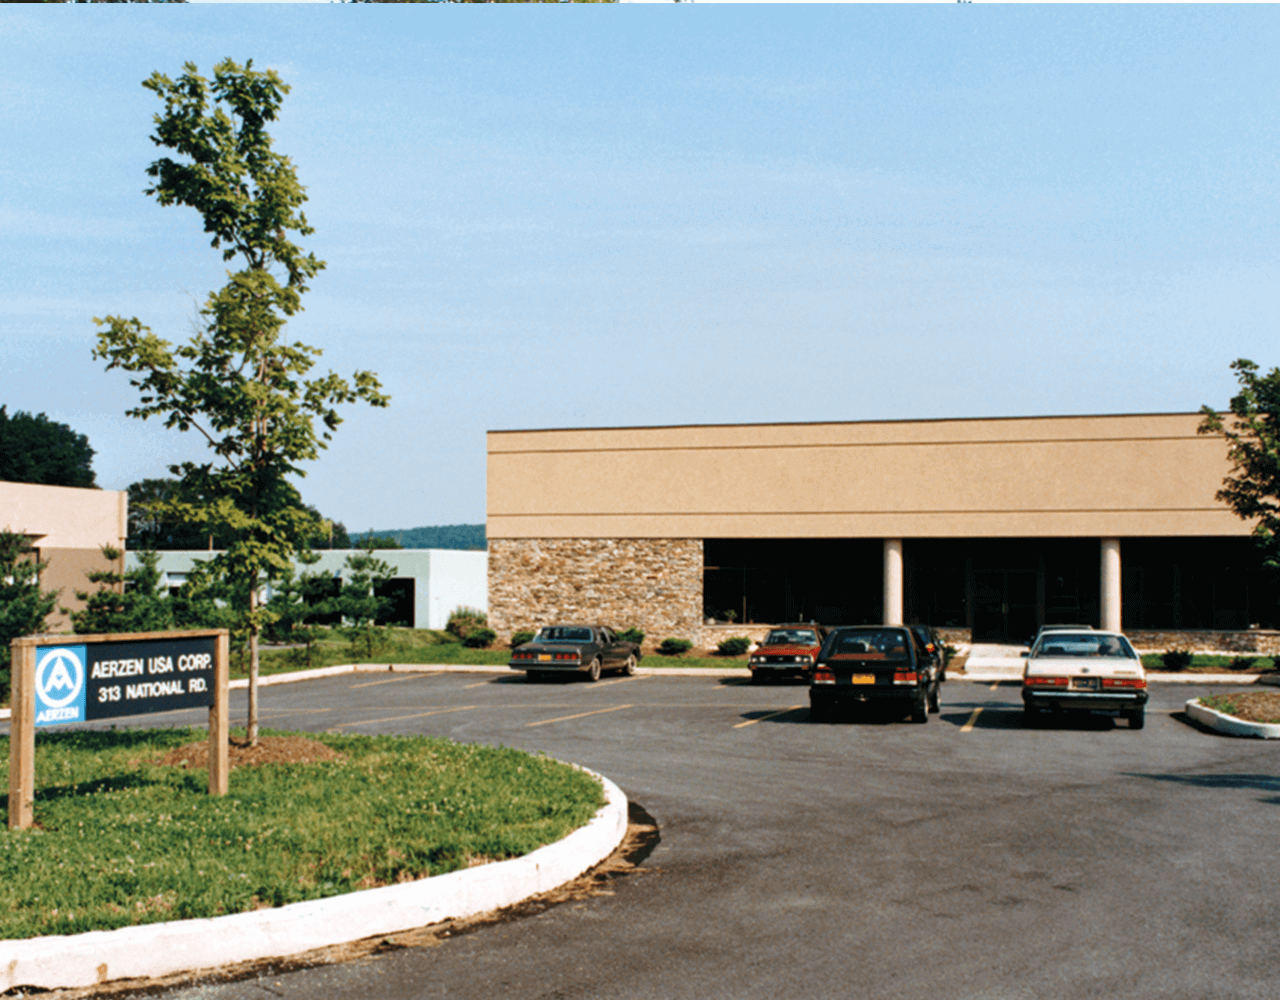 Alt kuruluşlardan AERZEN ABD Şirket binasının resmi